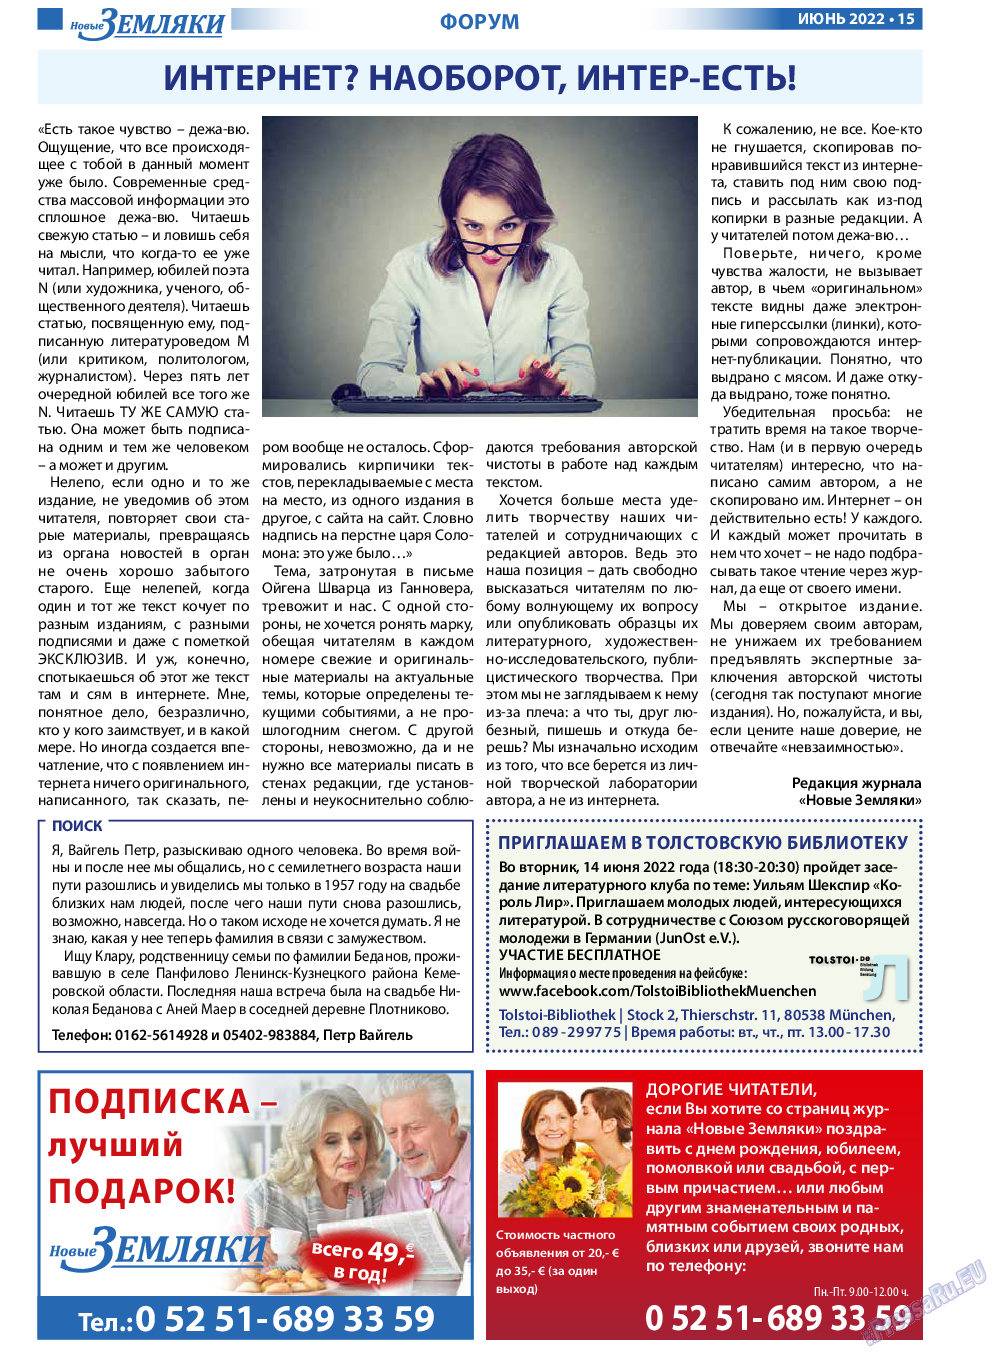 Новые Земляки, газета. 2022 №6 стр.15